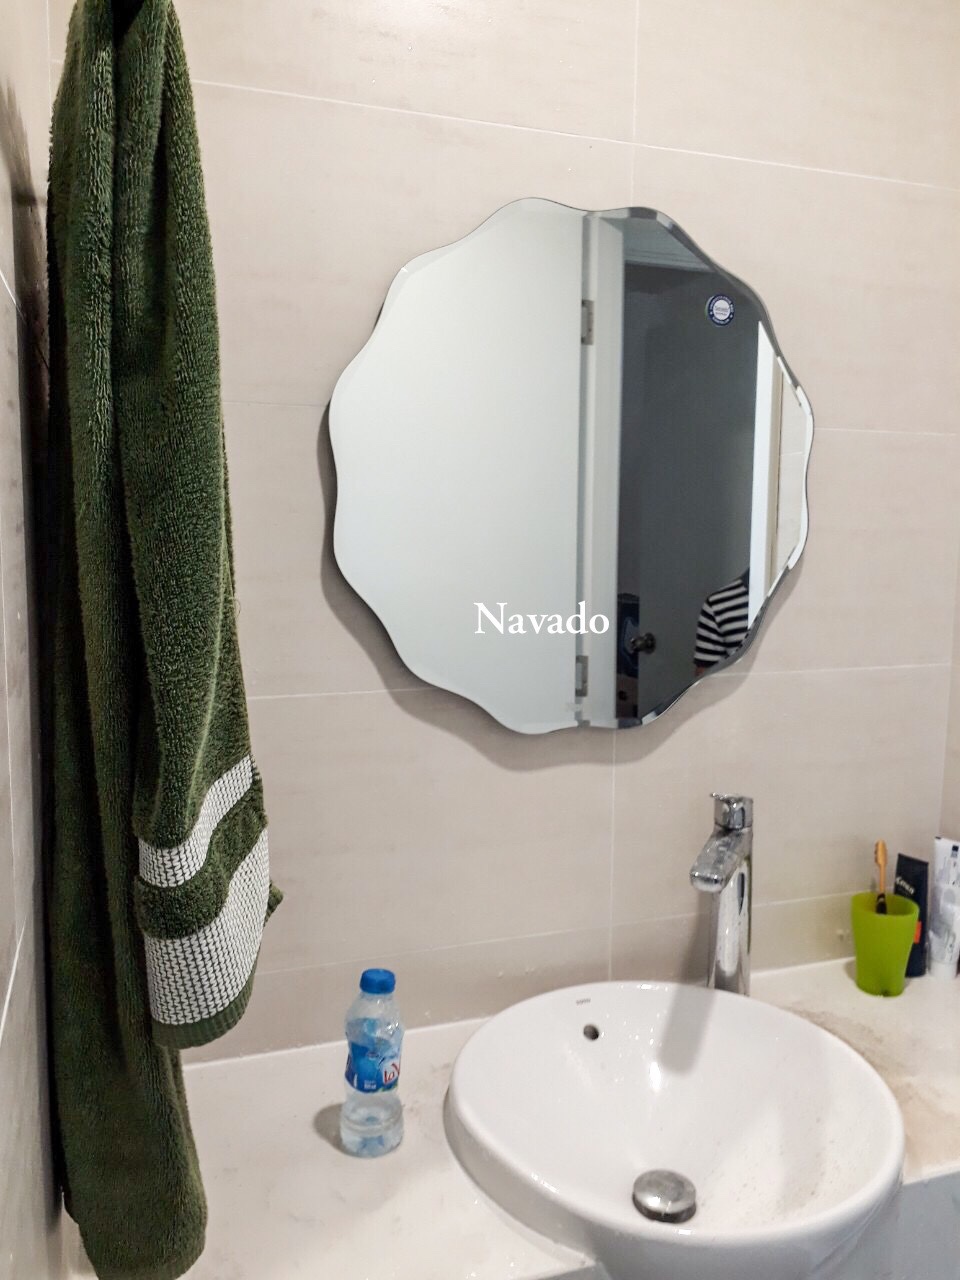 Gương phòng tắm tròn mài vát nghệ thuật - Chất liệu kính mài vát nghệ thuật cũng được áp dụng cho các loại gương phòng tắm tròn, tạo ra sự bóng loáng và mịn màng cho sản phẩm. Bên cạnh đó, một số gương còn được khắc họa những họa tiết nghệ thuật đẹp mắt, phù hợp với các không gian phòng tắm sang trọng và đẳng cấp. Hãy để chúng tôi giúp bạn tìm kiếm chiếc gương phòng tắm tròn mà bạn luôn ước ao!